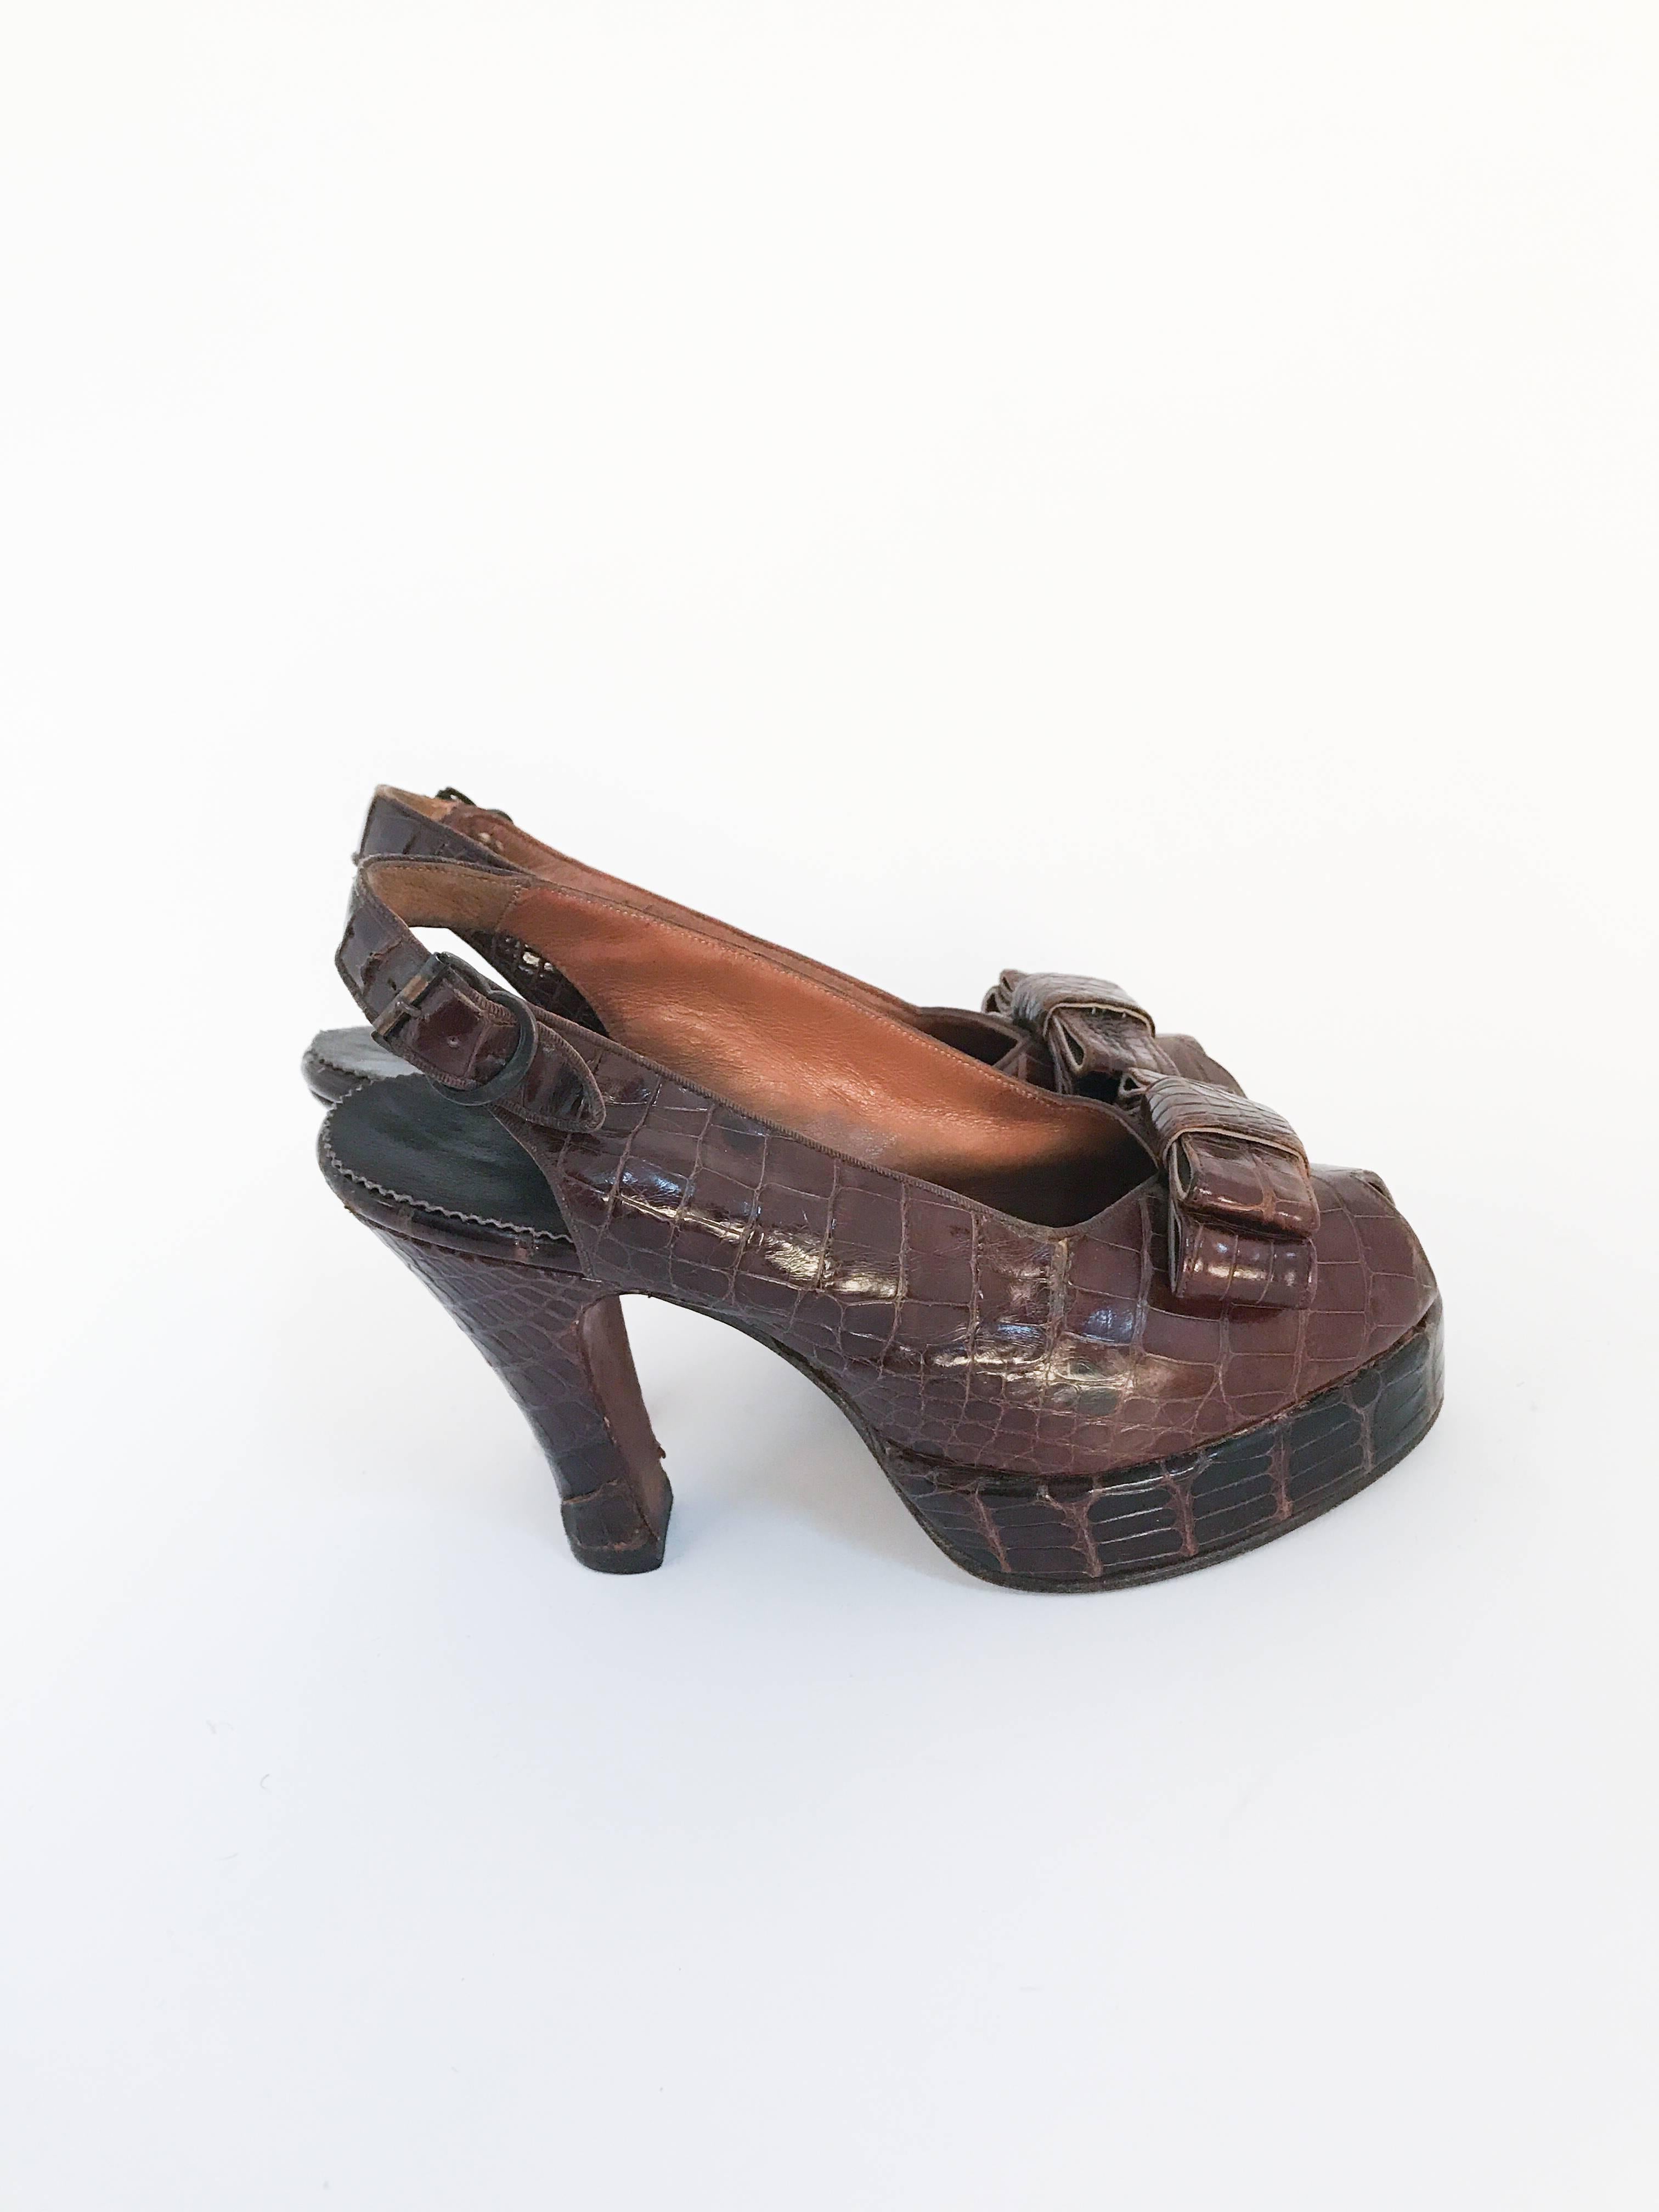 Chaussures à talons en alligator marron avec bride arrière, 1947 Bon état à San Francisco, CA